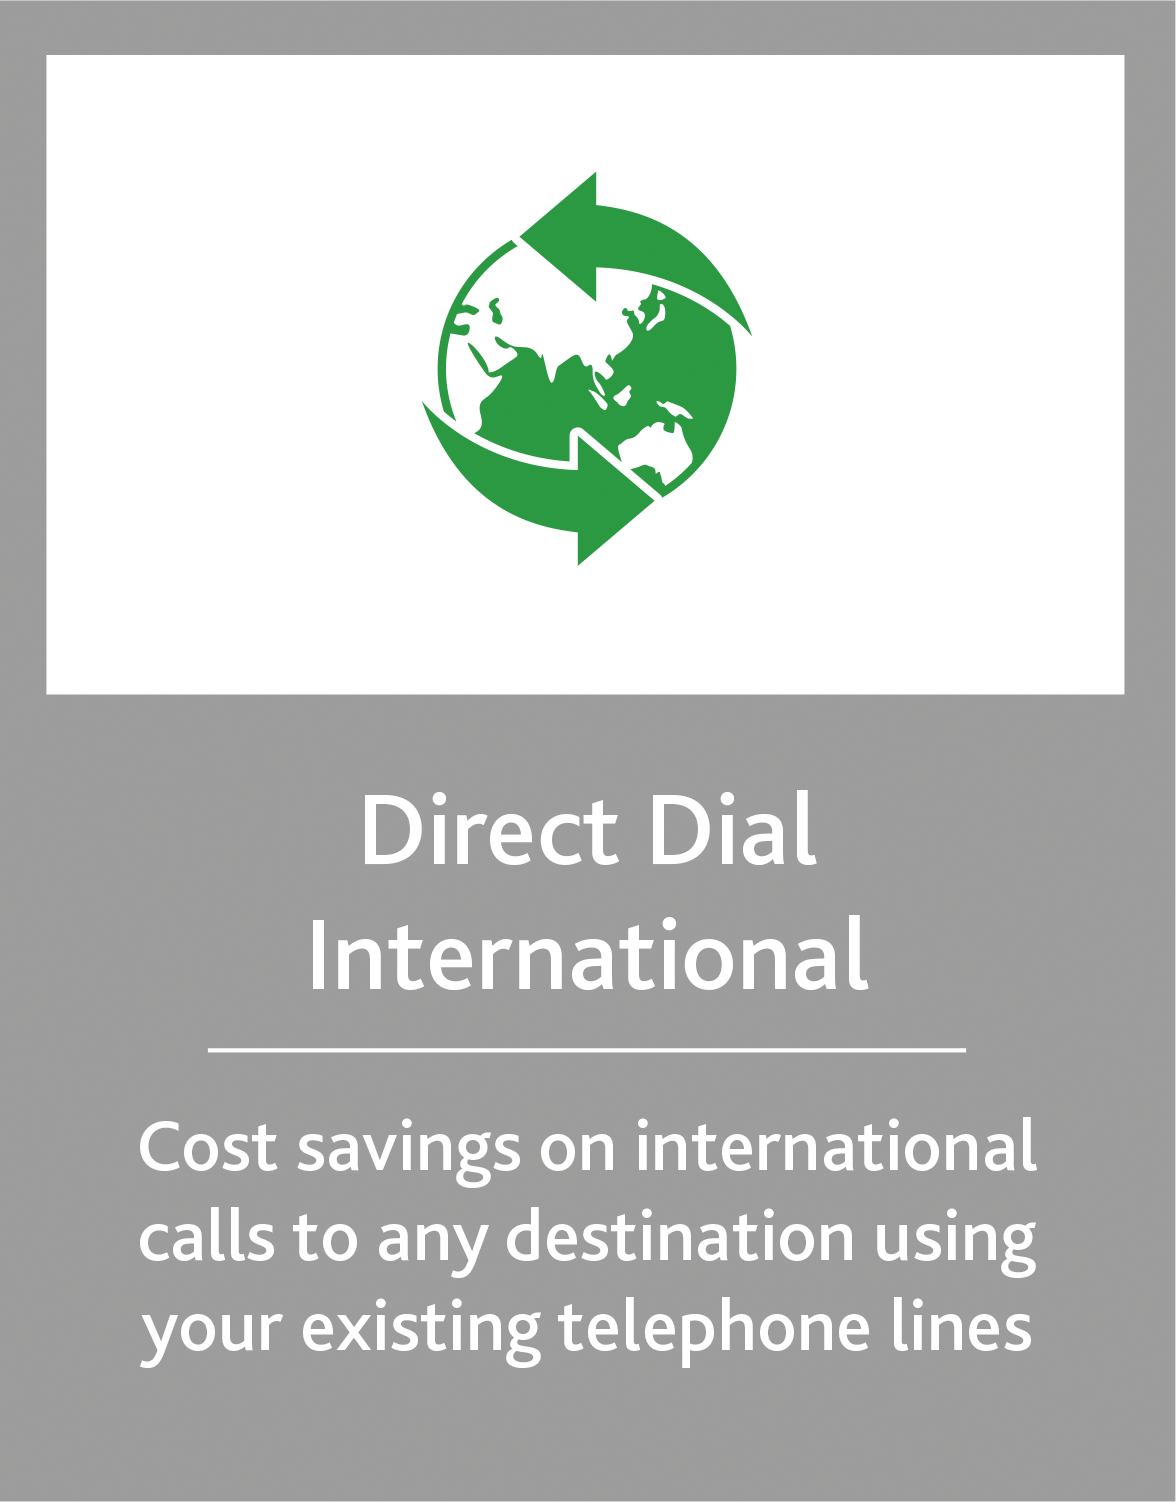 //kalaam-telecom.com/wp-content/uploads/2020/03/Direct-Dial-International.png